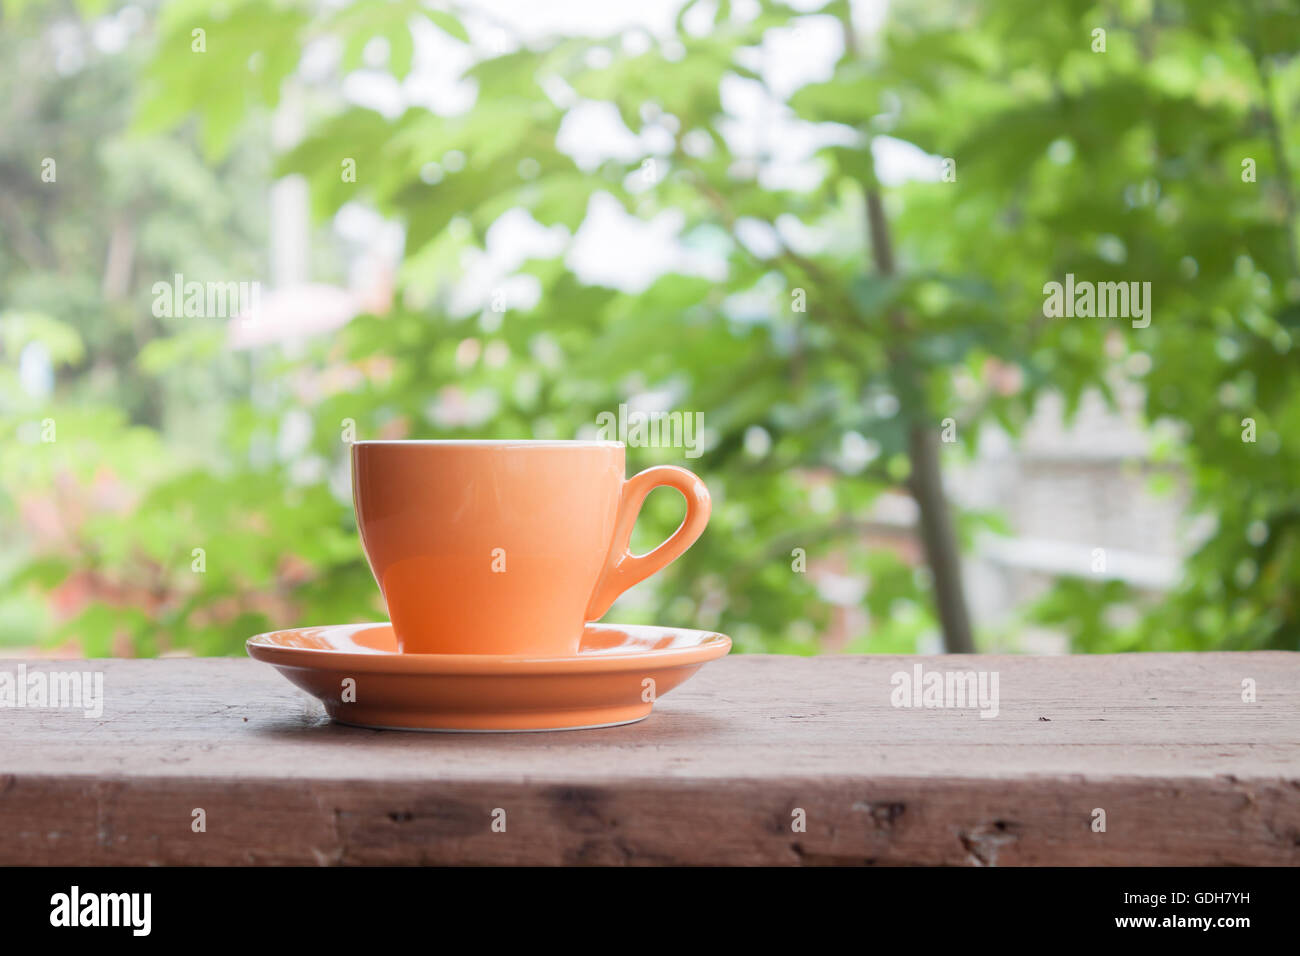 Orange tazza da caffè sul piano portapaziente con sfocate foglie verde sullo sfondo Foto Stock